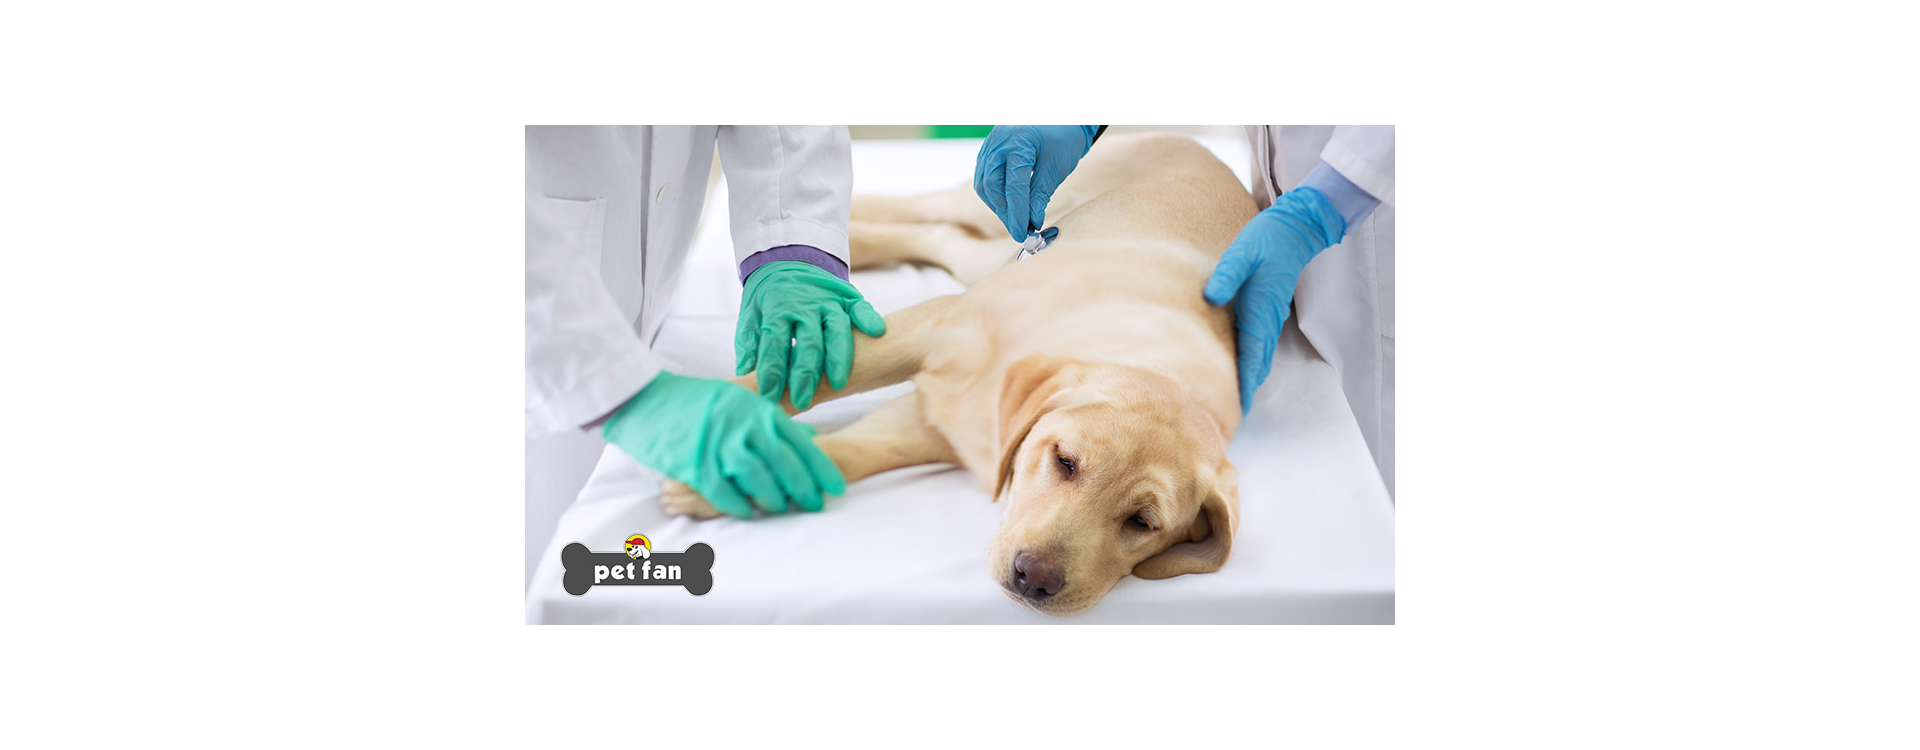 Πυομήτρα: Η απειλή που μπορεί να σκοτώσει τη σκυλίτσα σου μέσα σε 48 ώρες